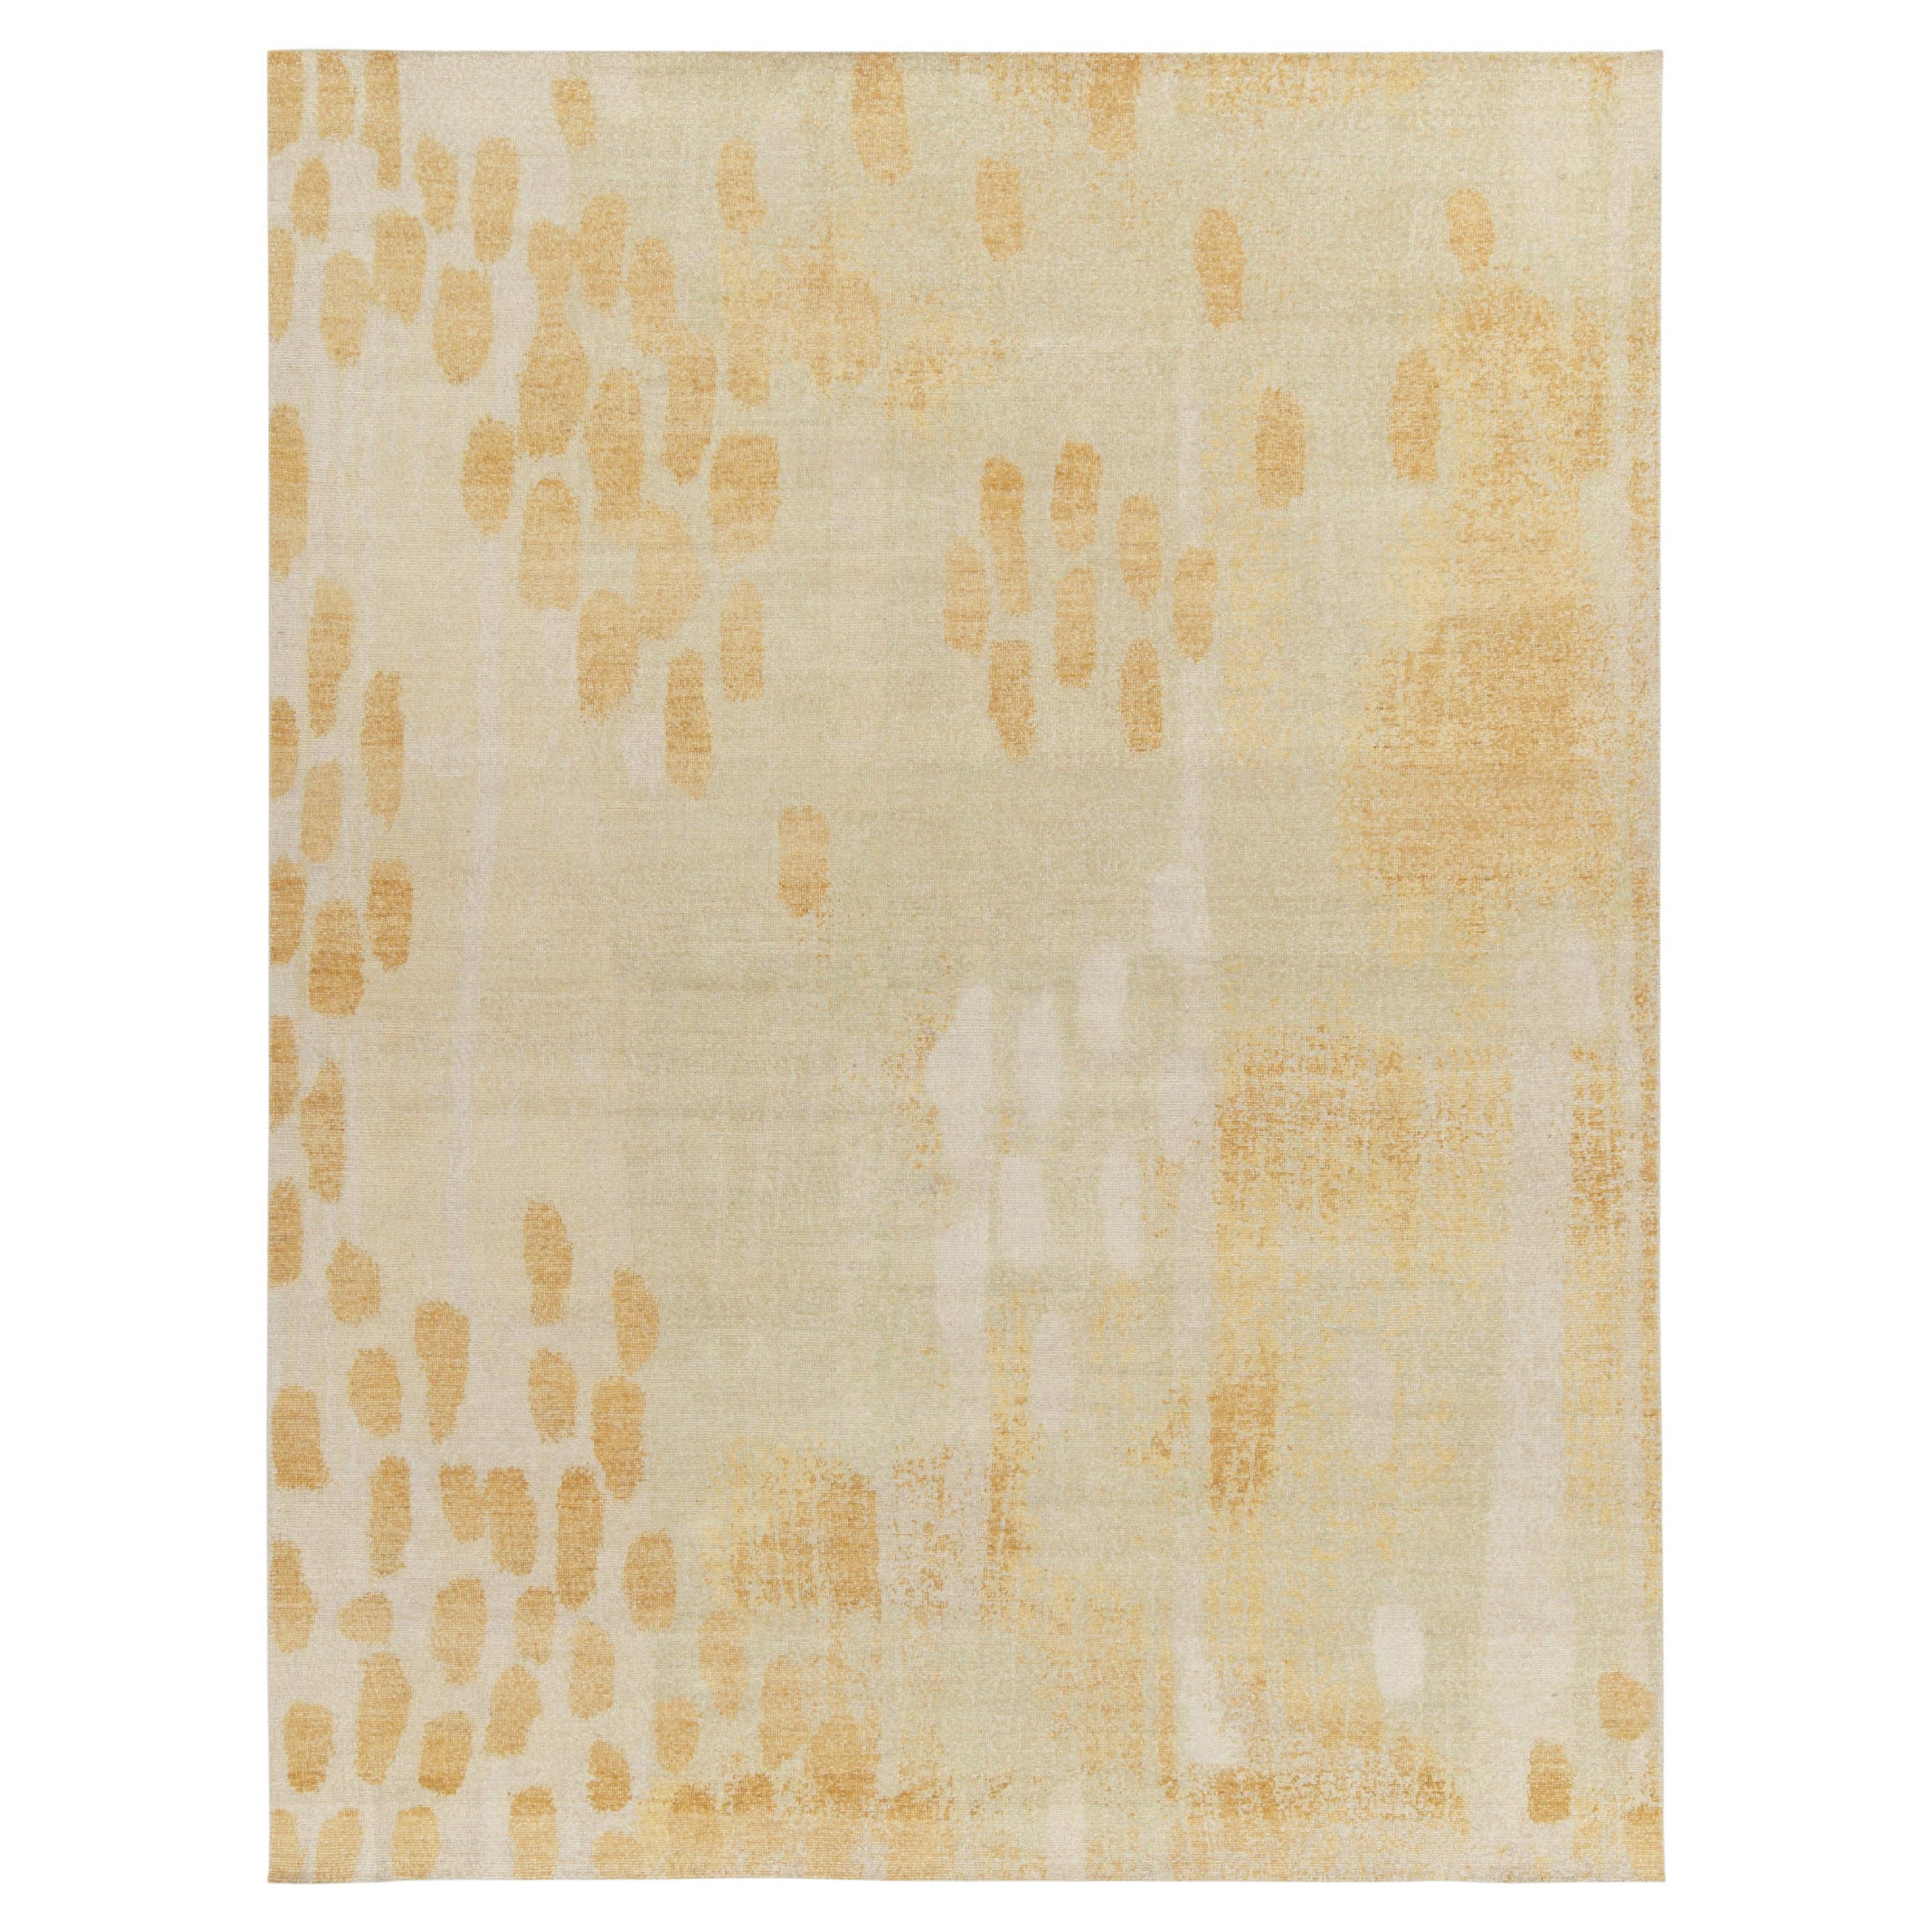 Teppich & Kelim''s Distressed Style Moderner Teppich in Creme, Gold, weißen Punkten Muster im Angebot